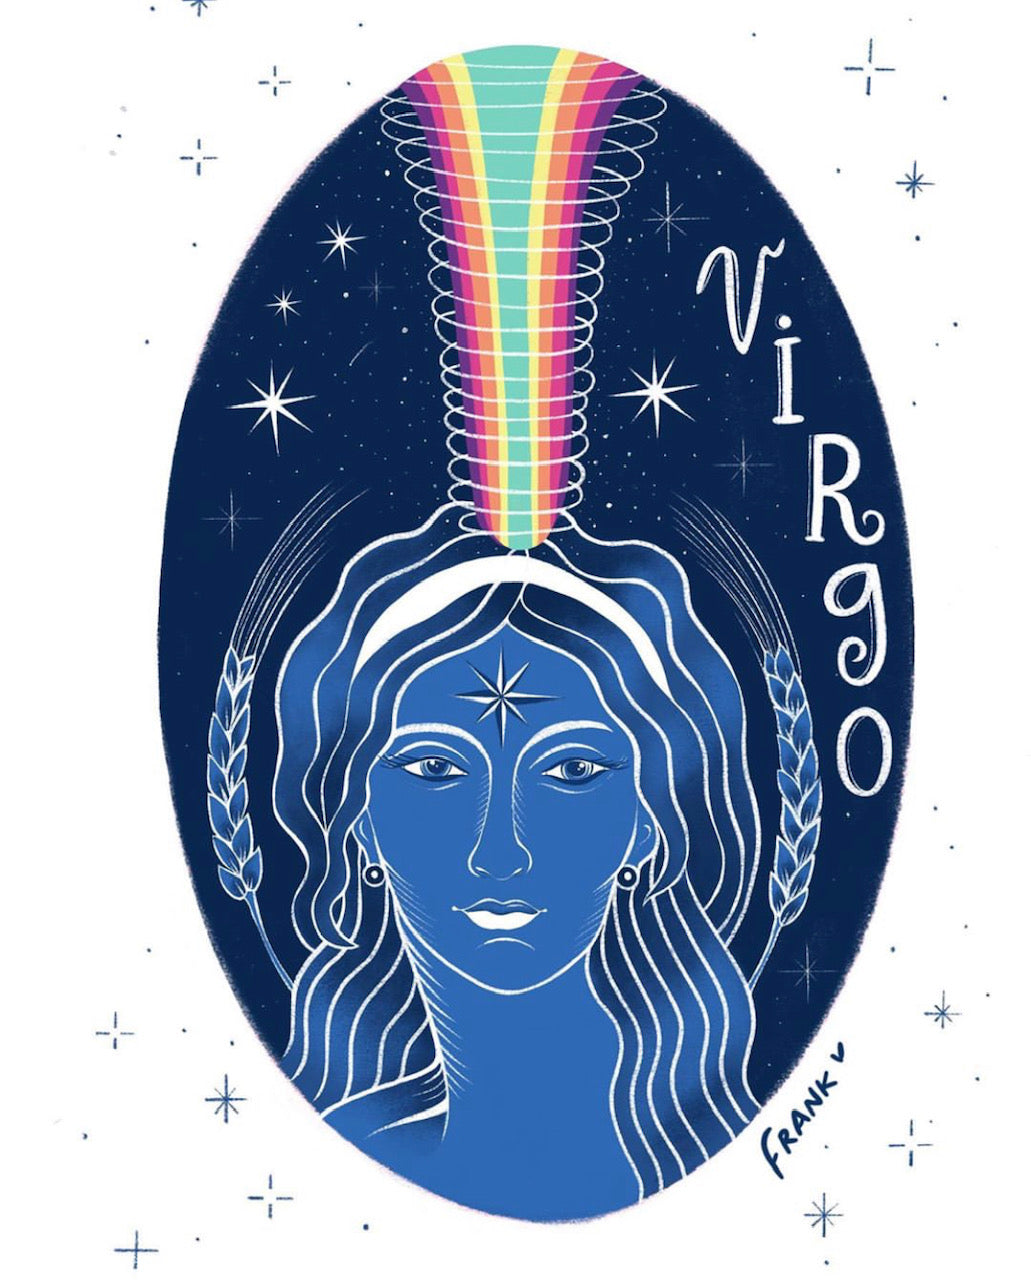 Virgo Season, Welcome!